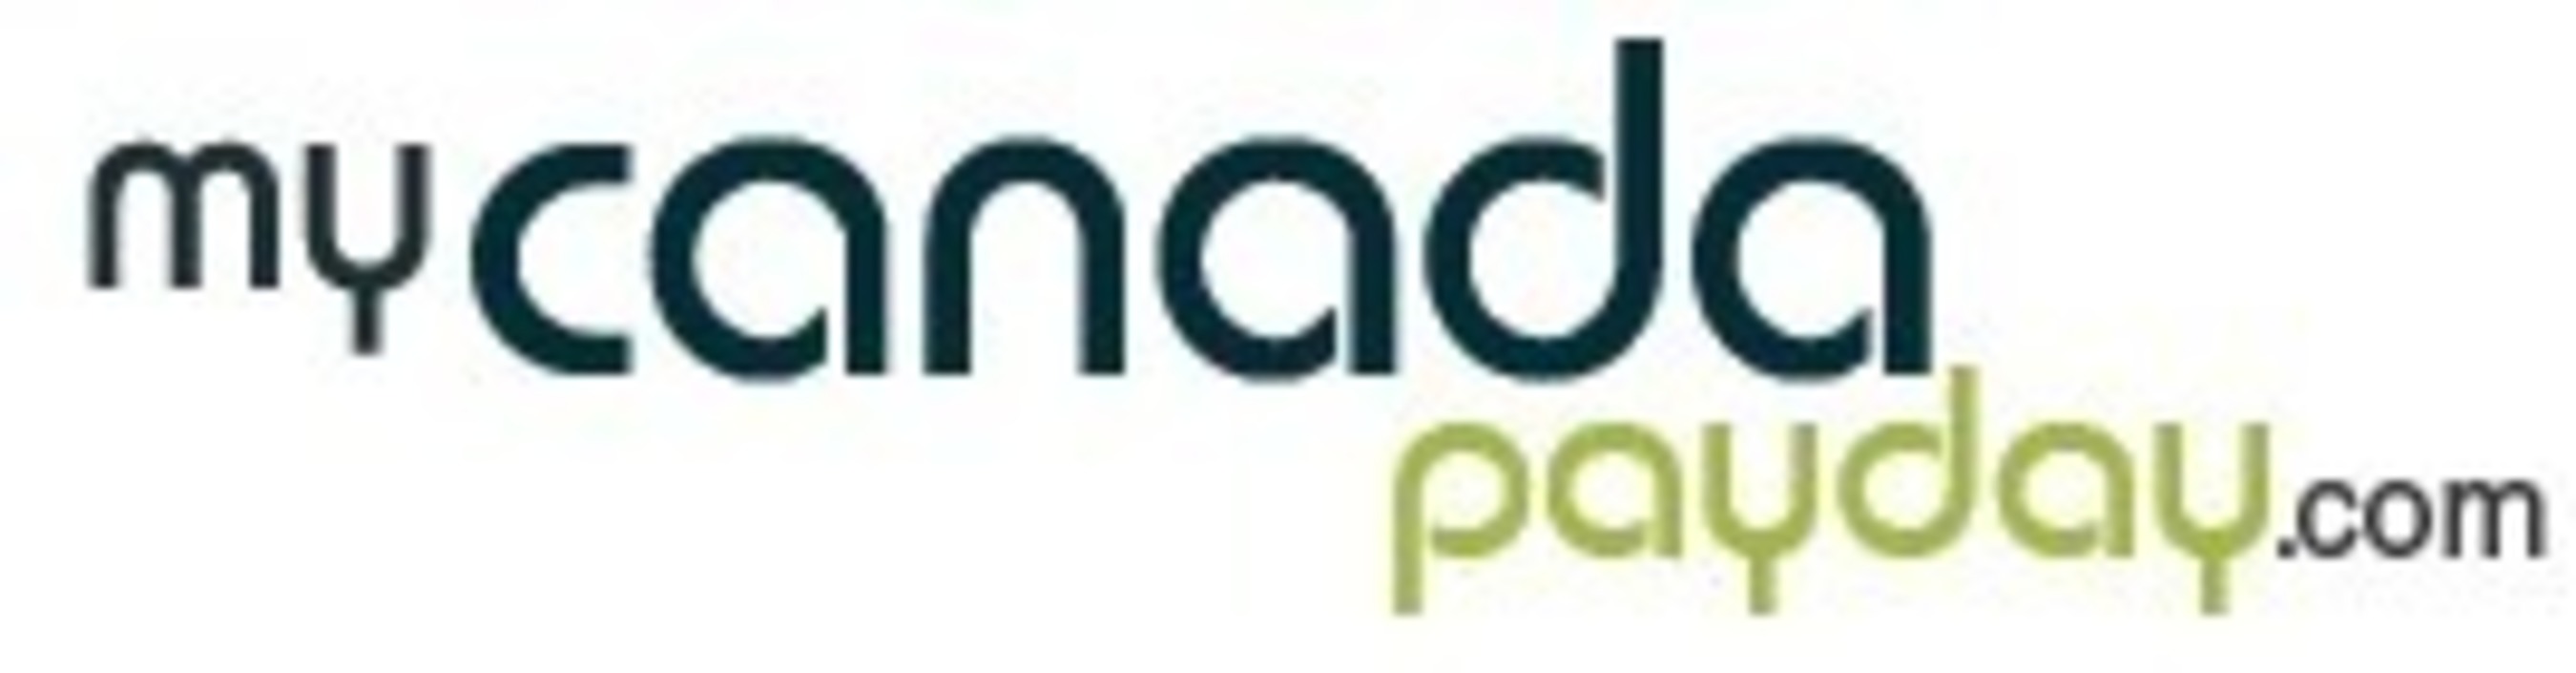 My Canada Payday logo (PRNewsFoto/My Canada Payday)